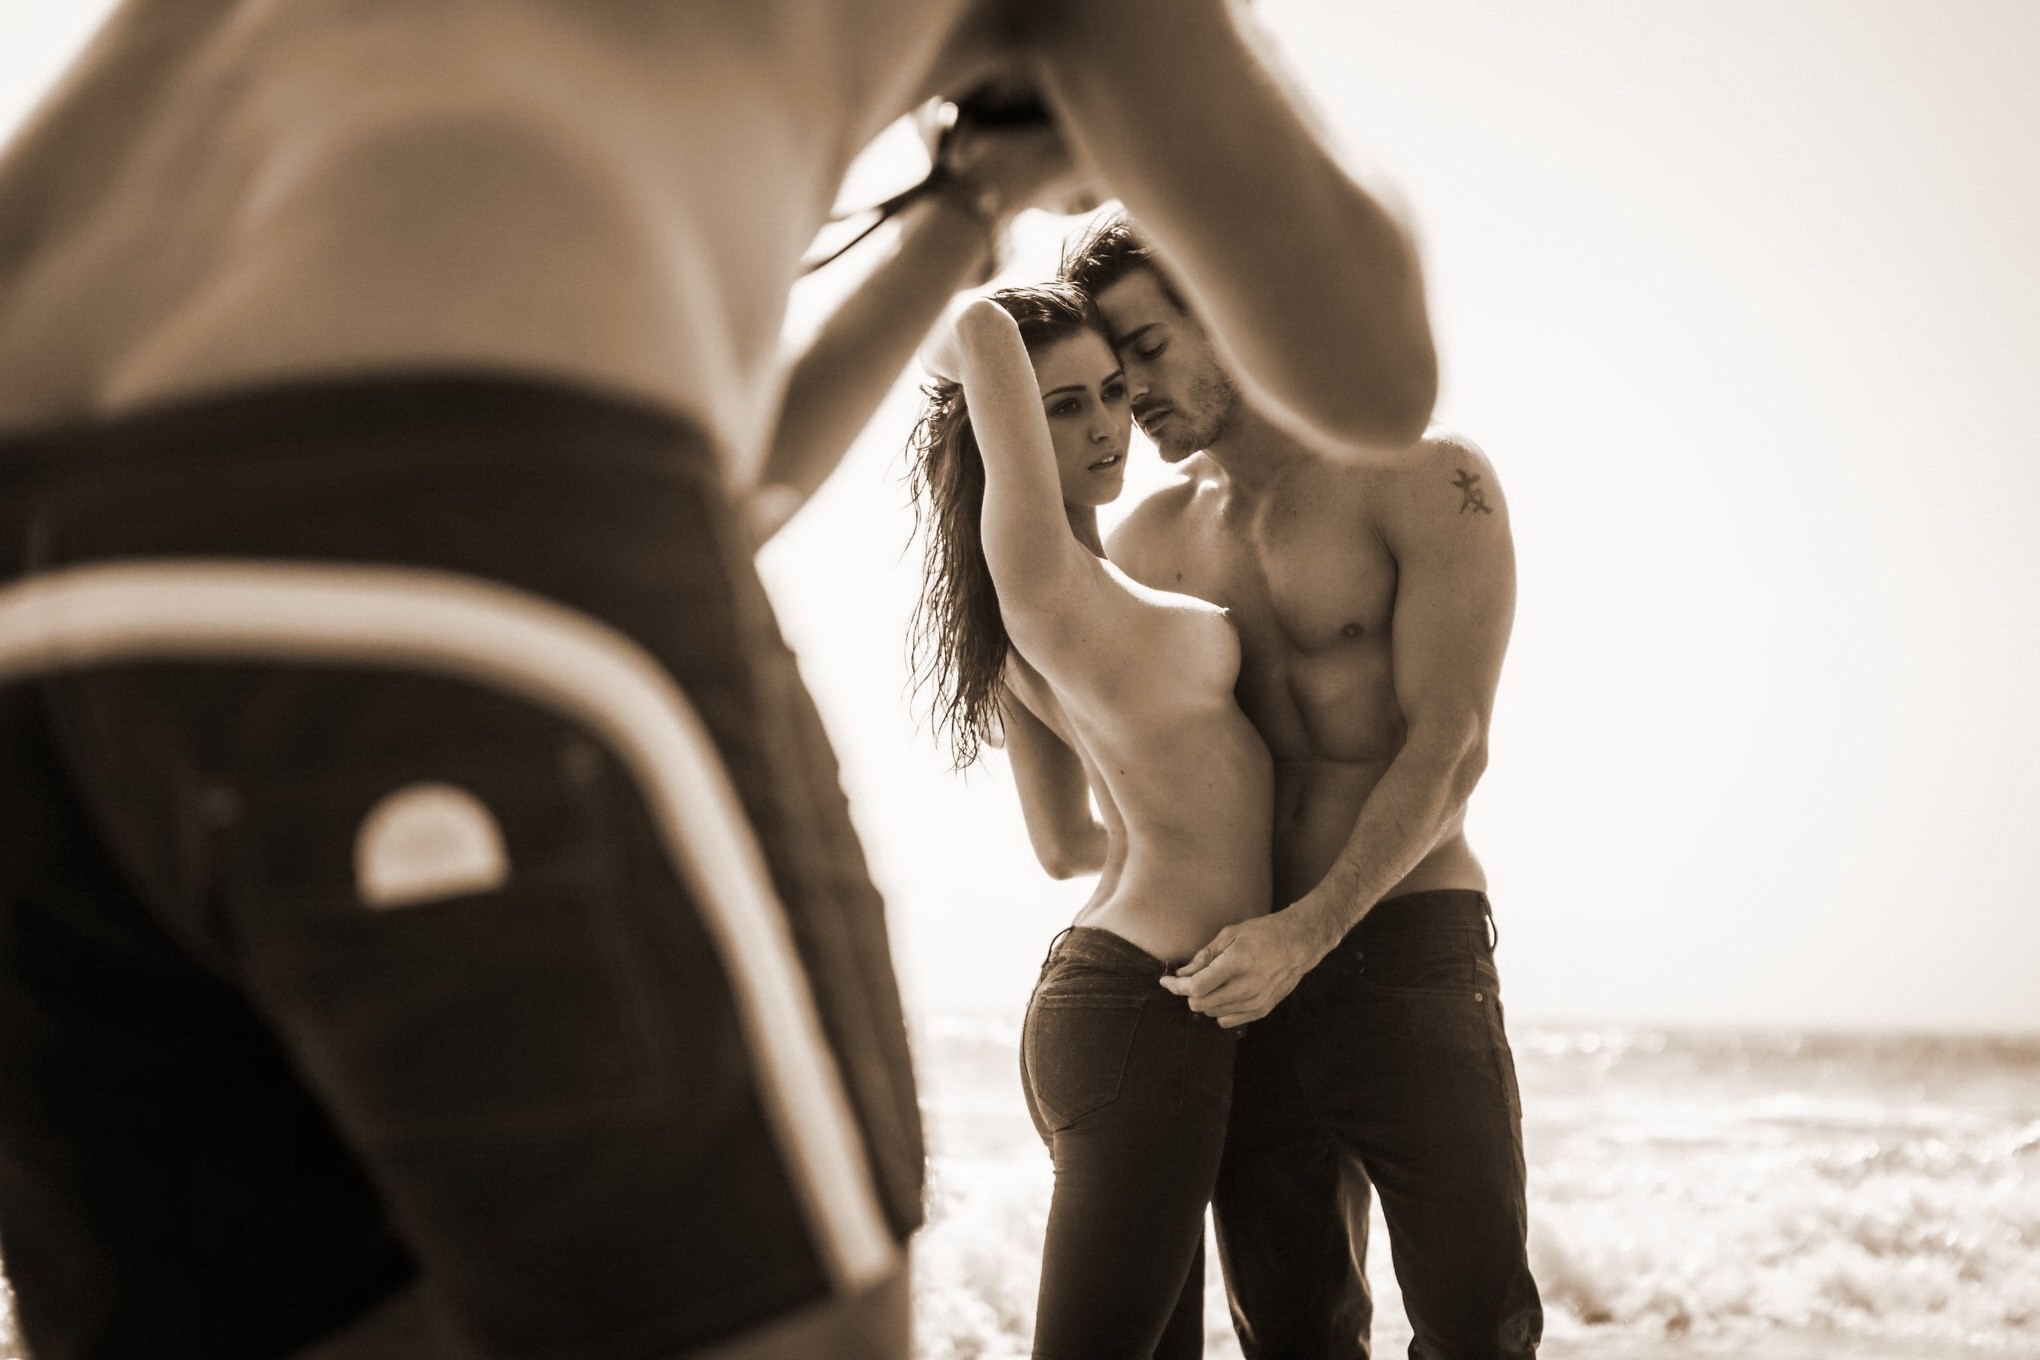 Jehane gigi paris totalmente desnuda acariciando en la playa photoshoot por steve shaw
 #75181106